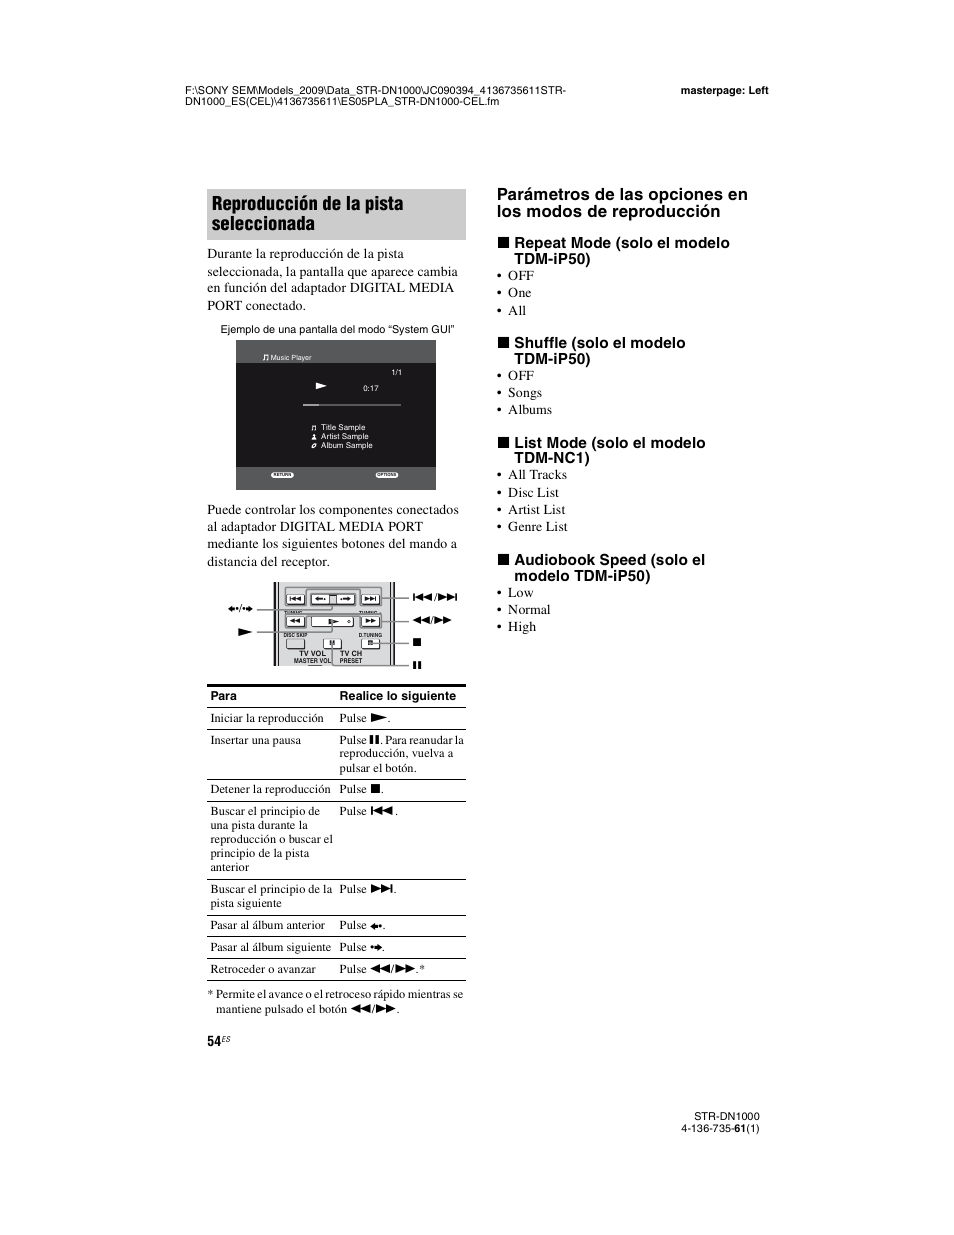 Reproducción de la pista seleccionada, X repeat mode (solo el modelo tdm-ip50), X shuffle (solo el modelo tdm-ip50) | X list mode (solo el modelo tdm-nc1), X audiobook speed (solo el modelo tdm-ip50) | Sony STR-DN1000 Manual del usuario | Página 54 / 144